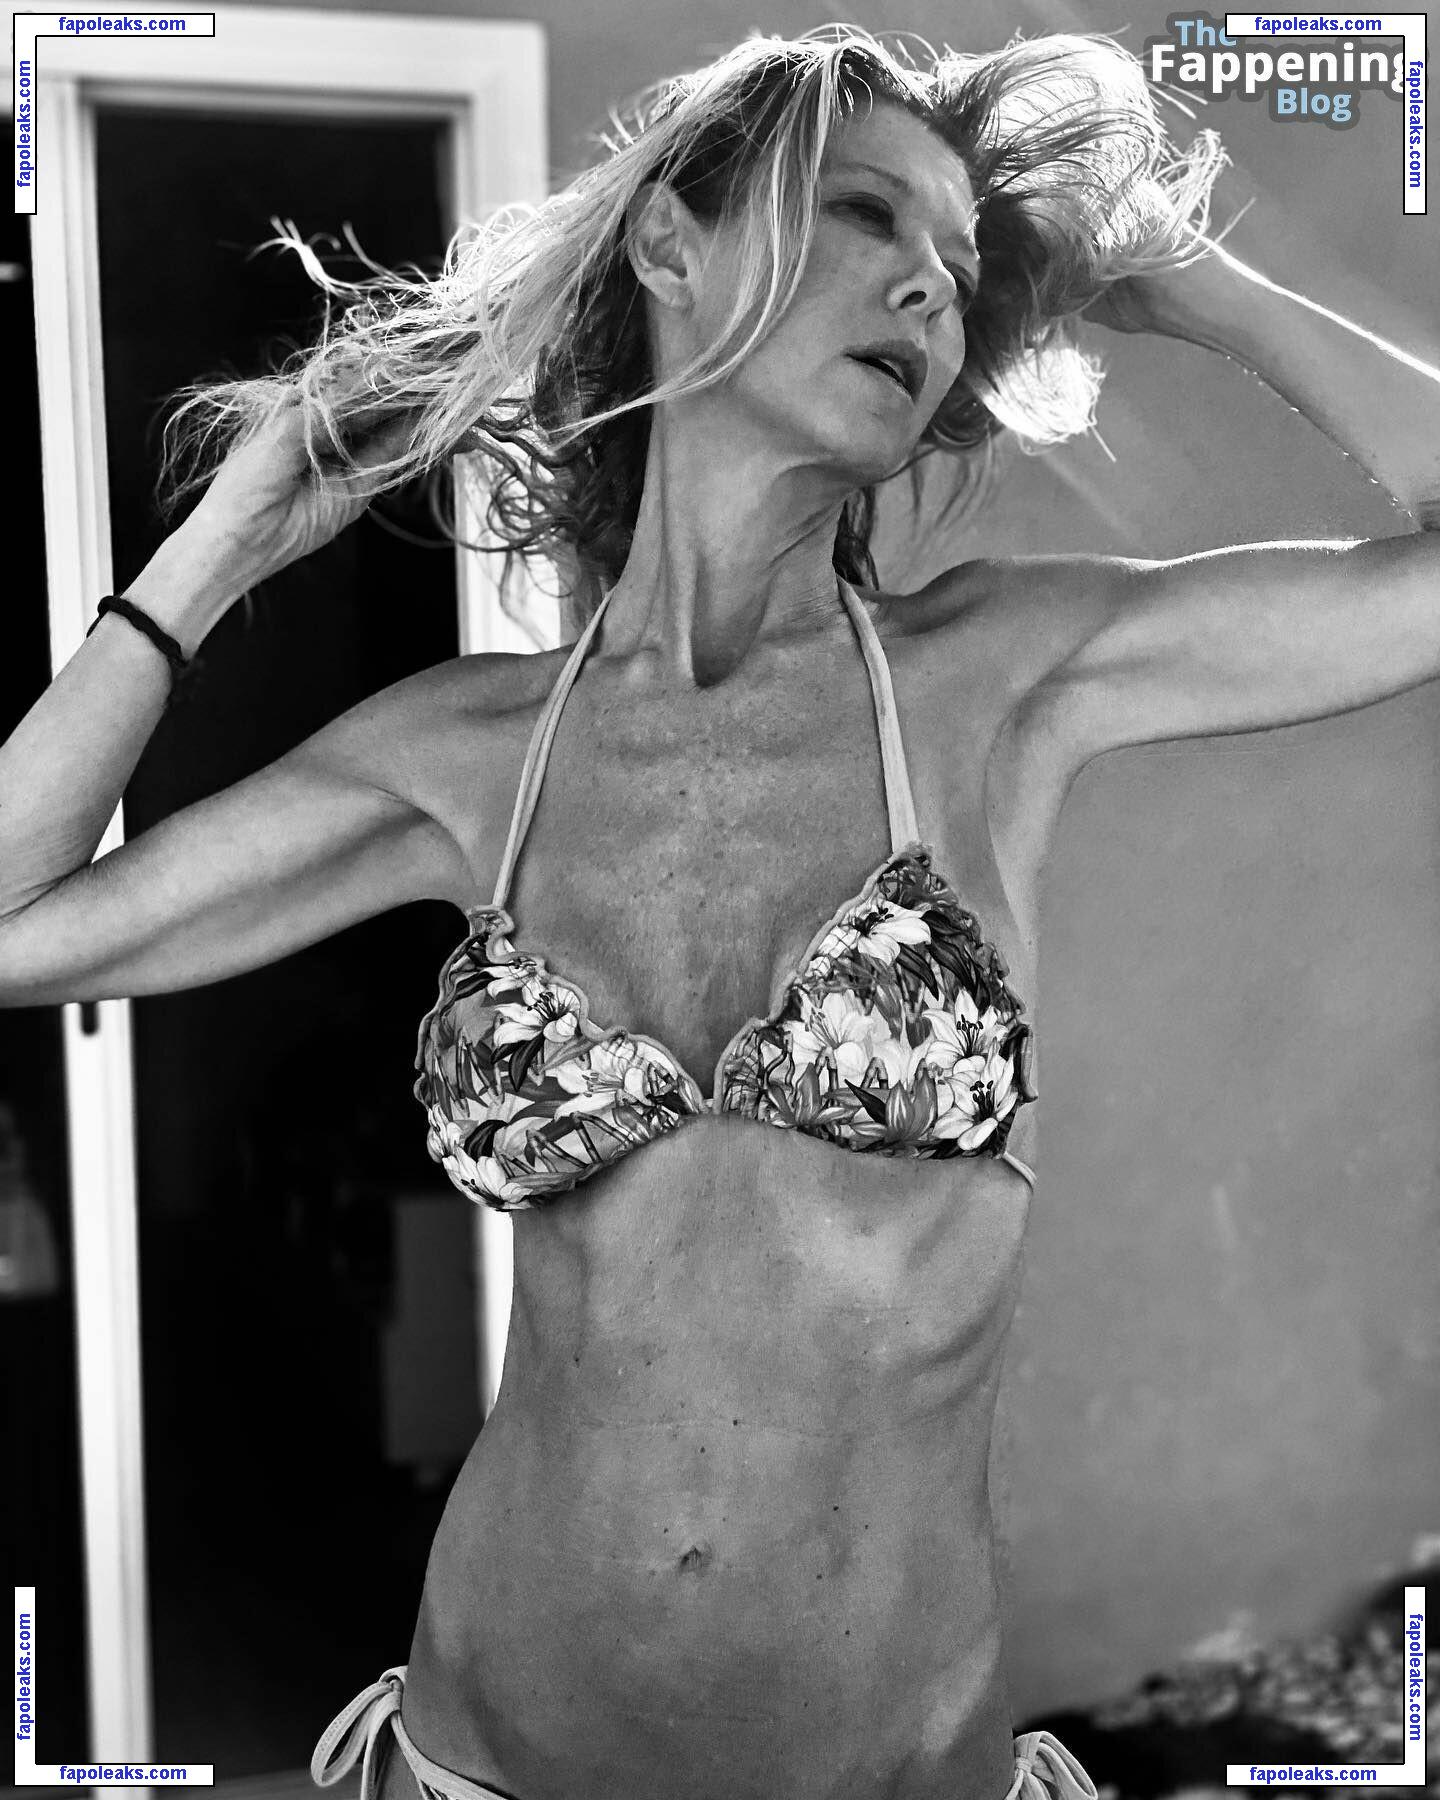 Tara Reid / tarareid nude photo #0775 from OnlyFans